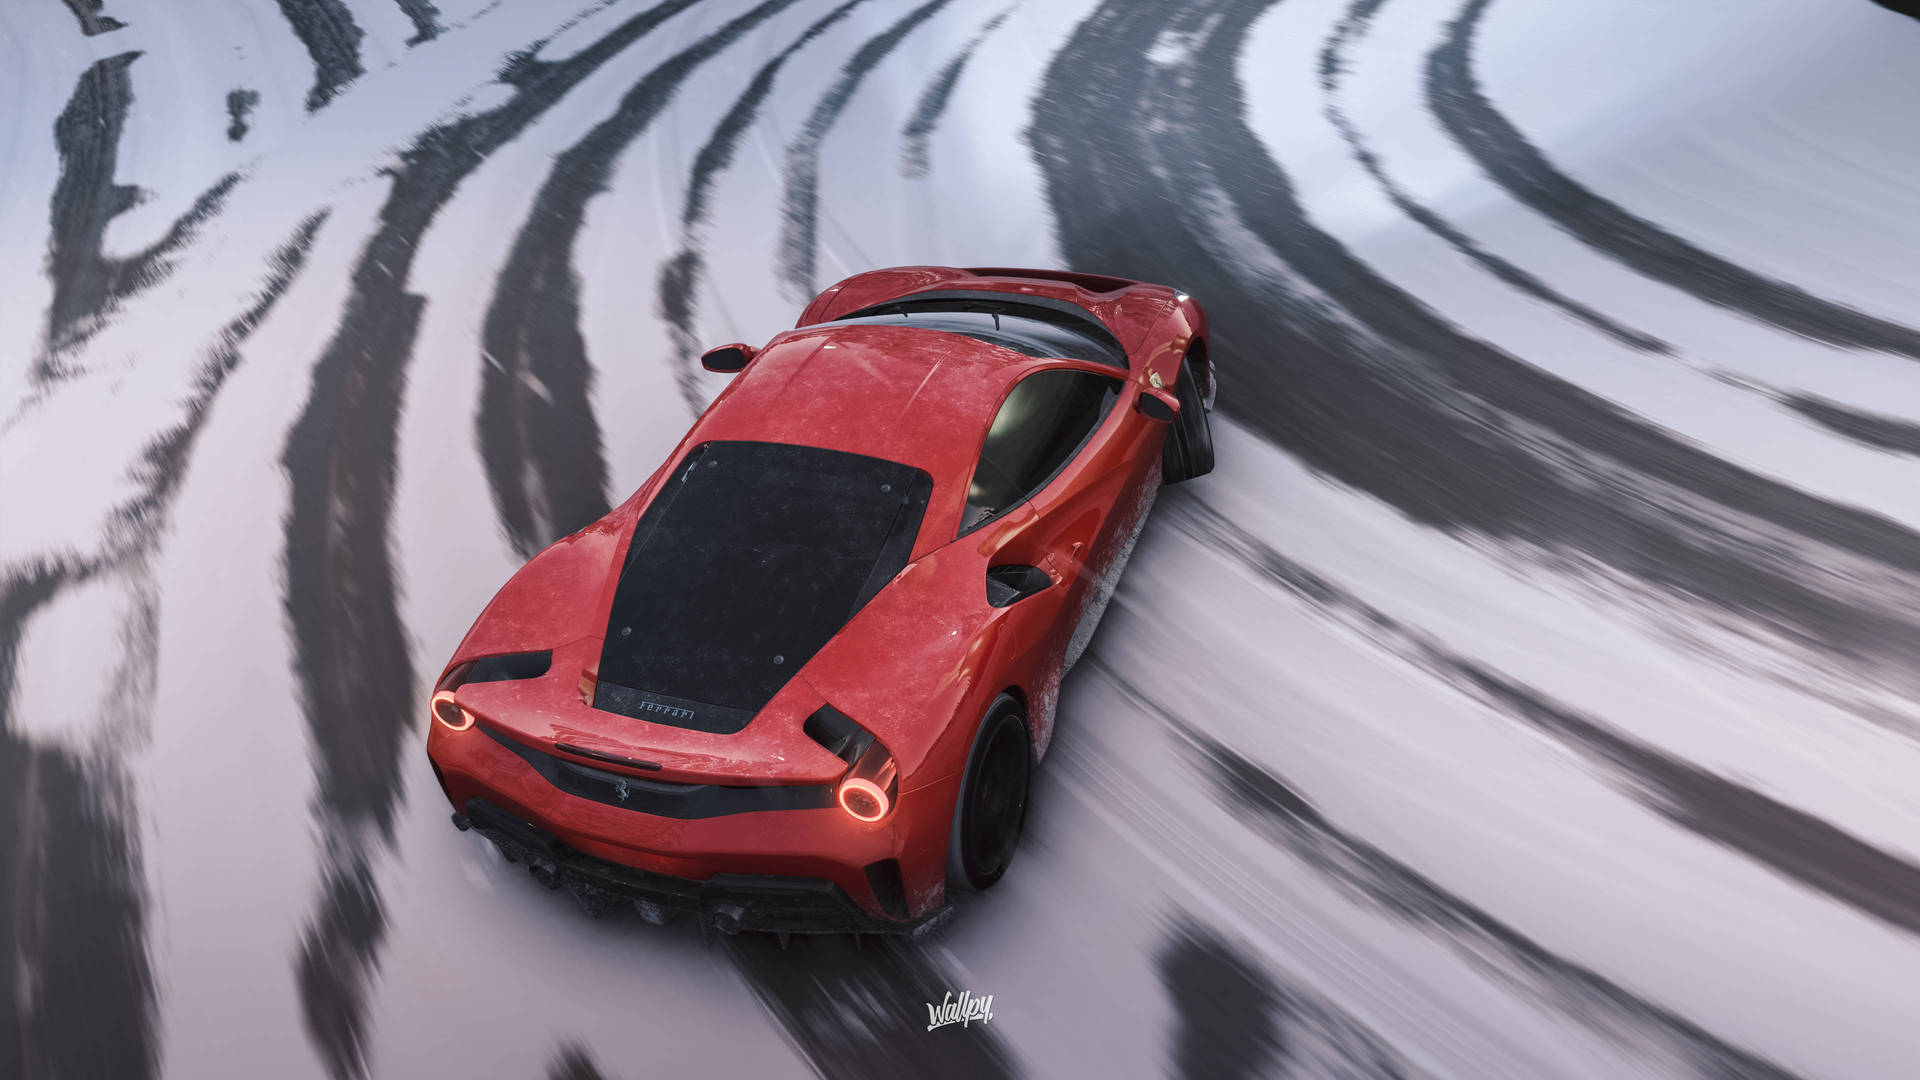 Red Ferrari In Forza 4 Game